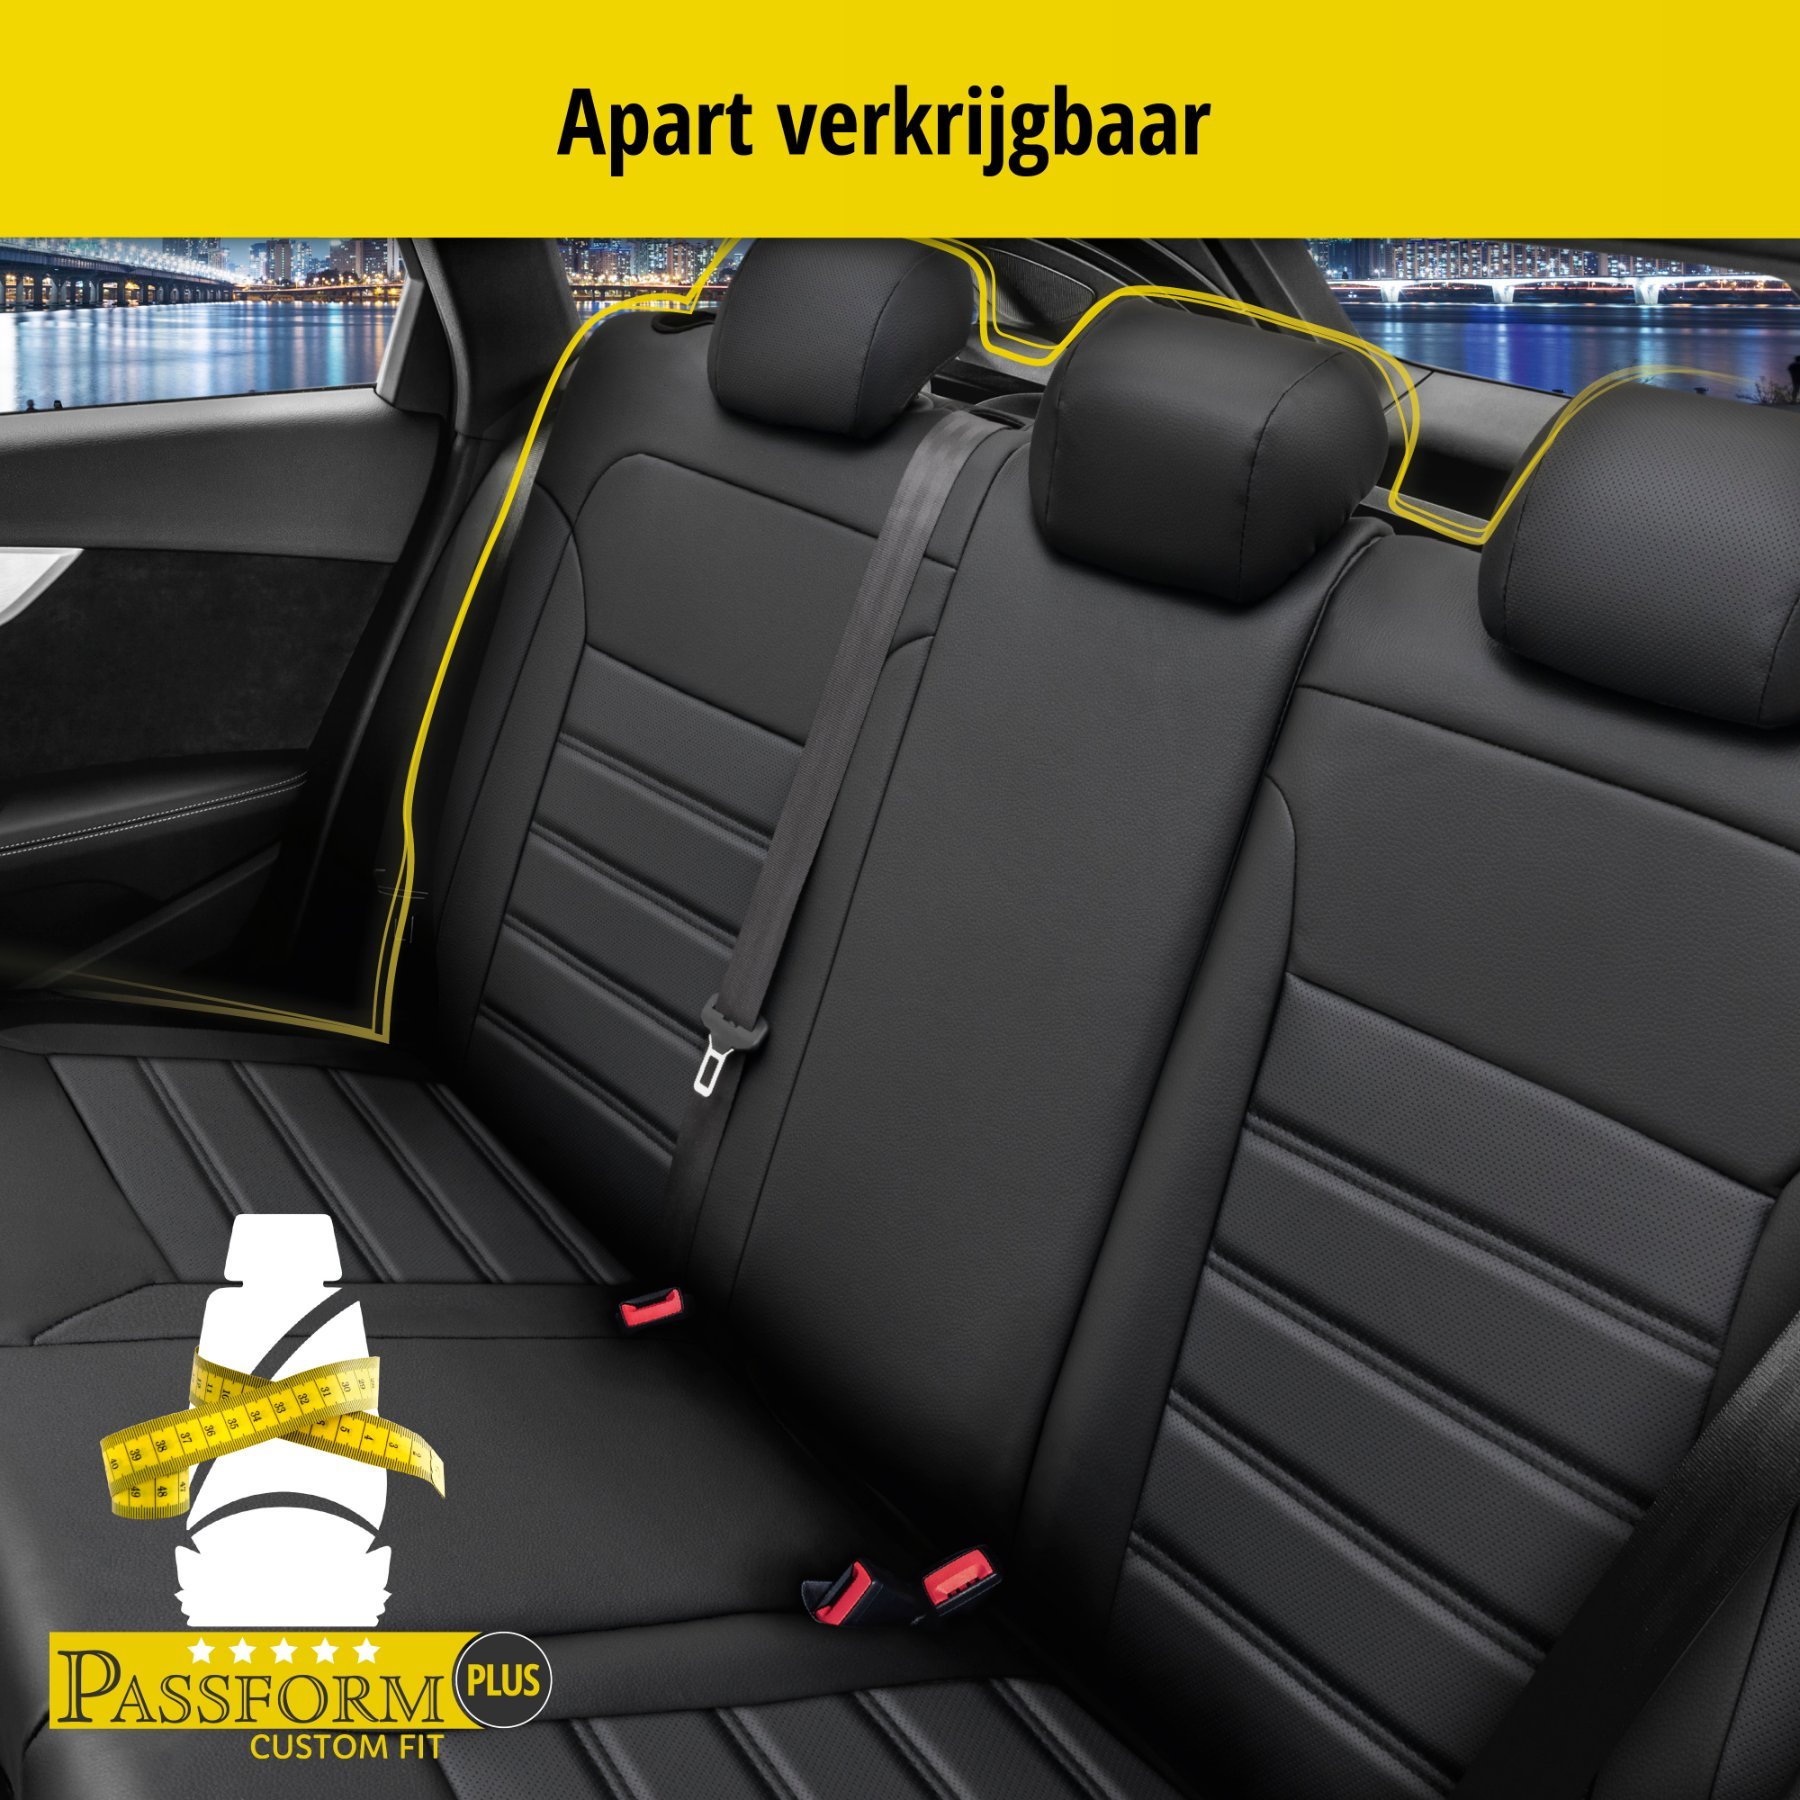 Auto stoelbekleding Robusto geschikt voor Opel Astra H 01/2004-05/2014, Astra H notchback 02/2007-05/2014, 2 enkele zetelhoezen voor standard zetels